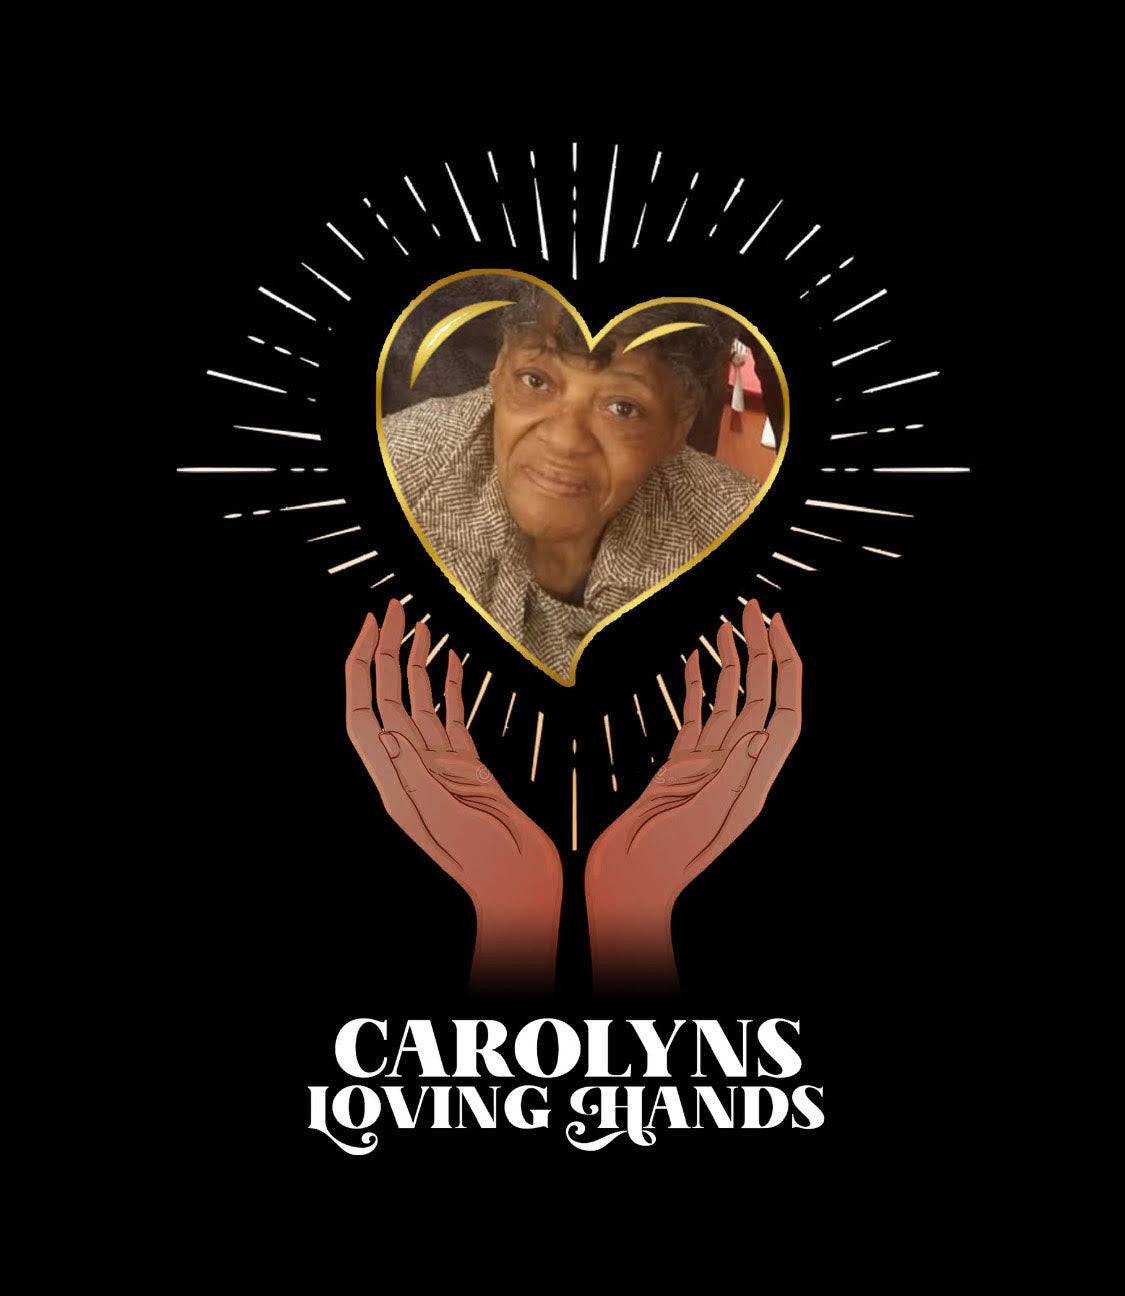 Carolyns Loving Hands